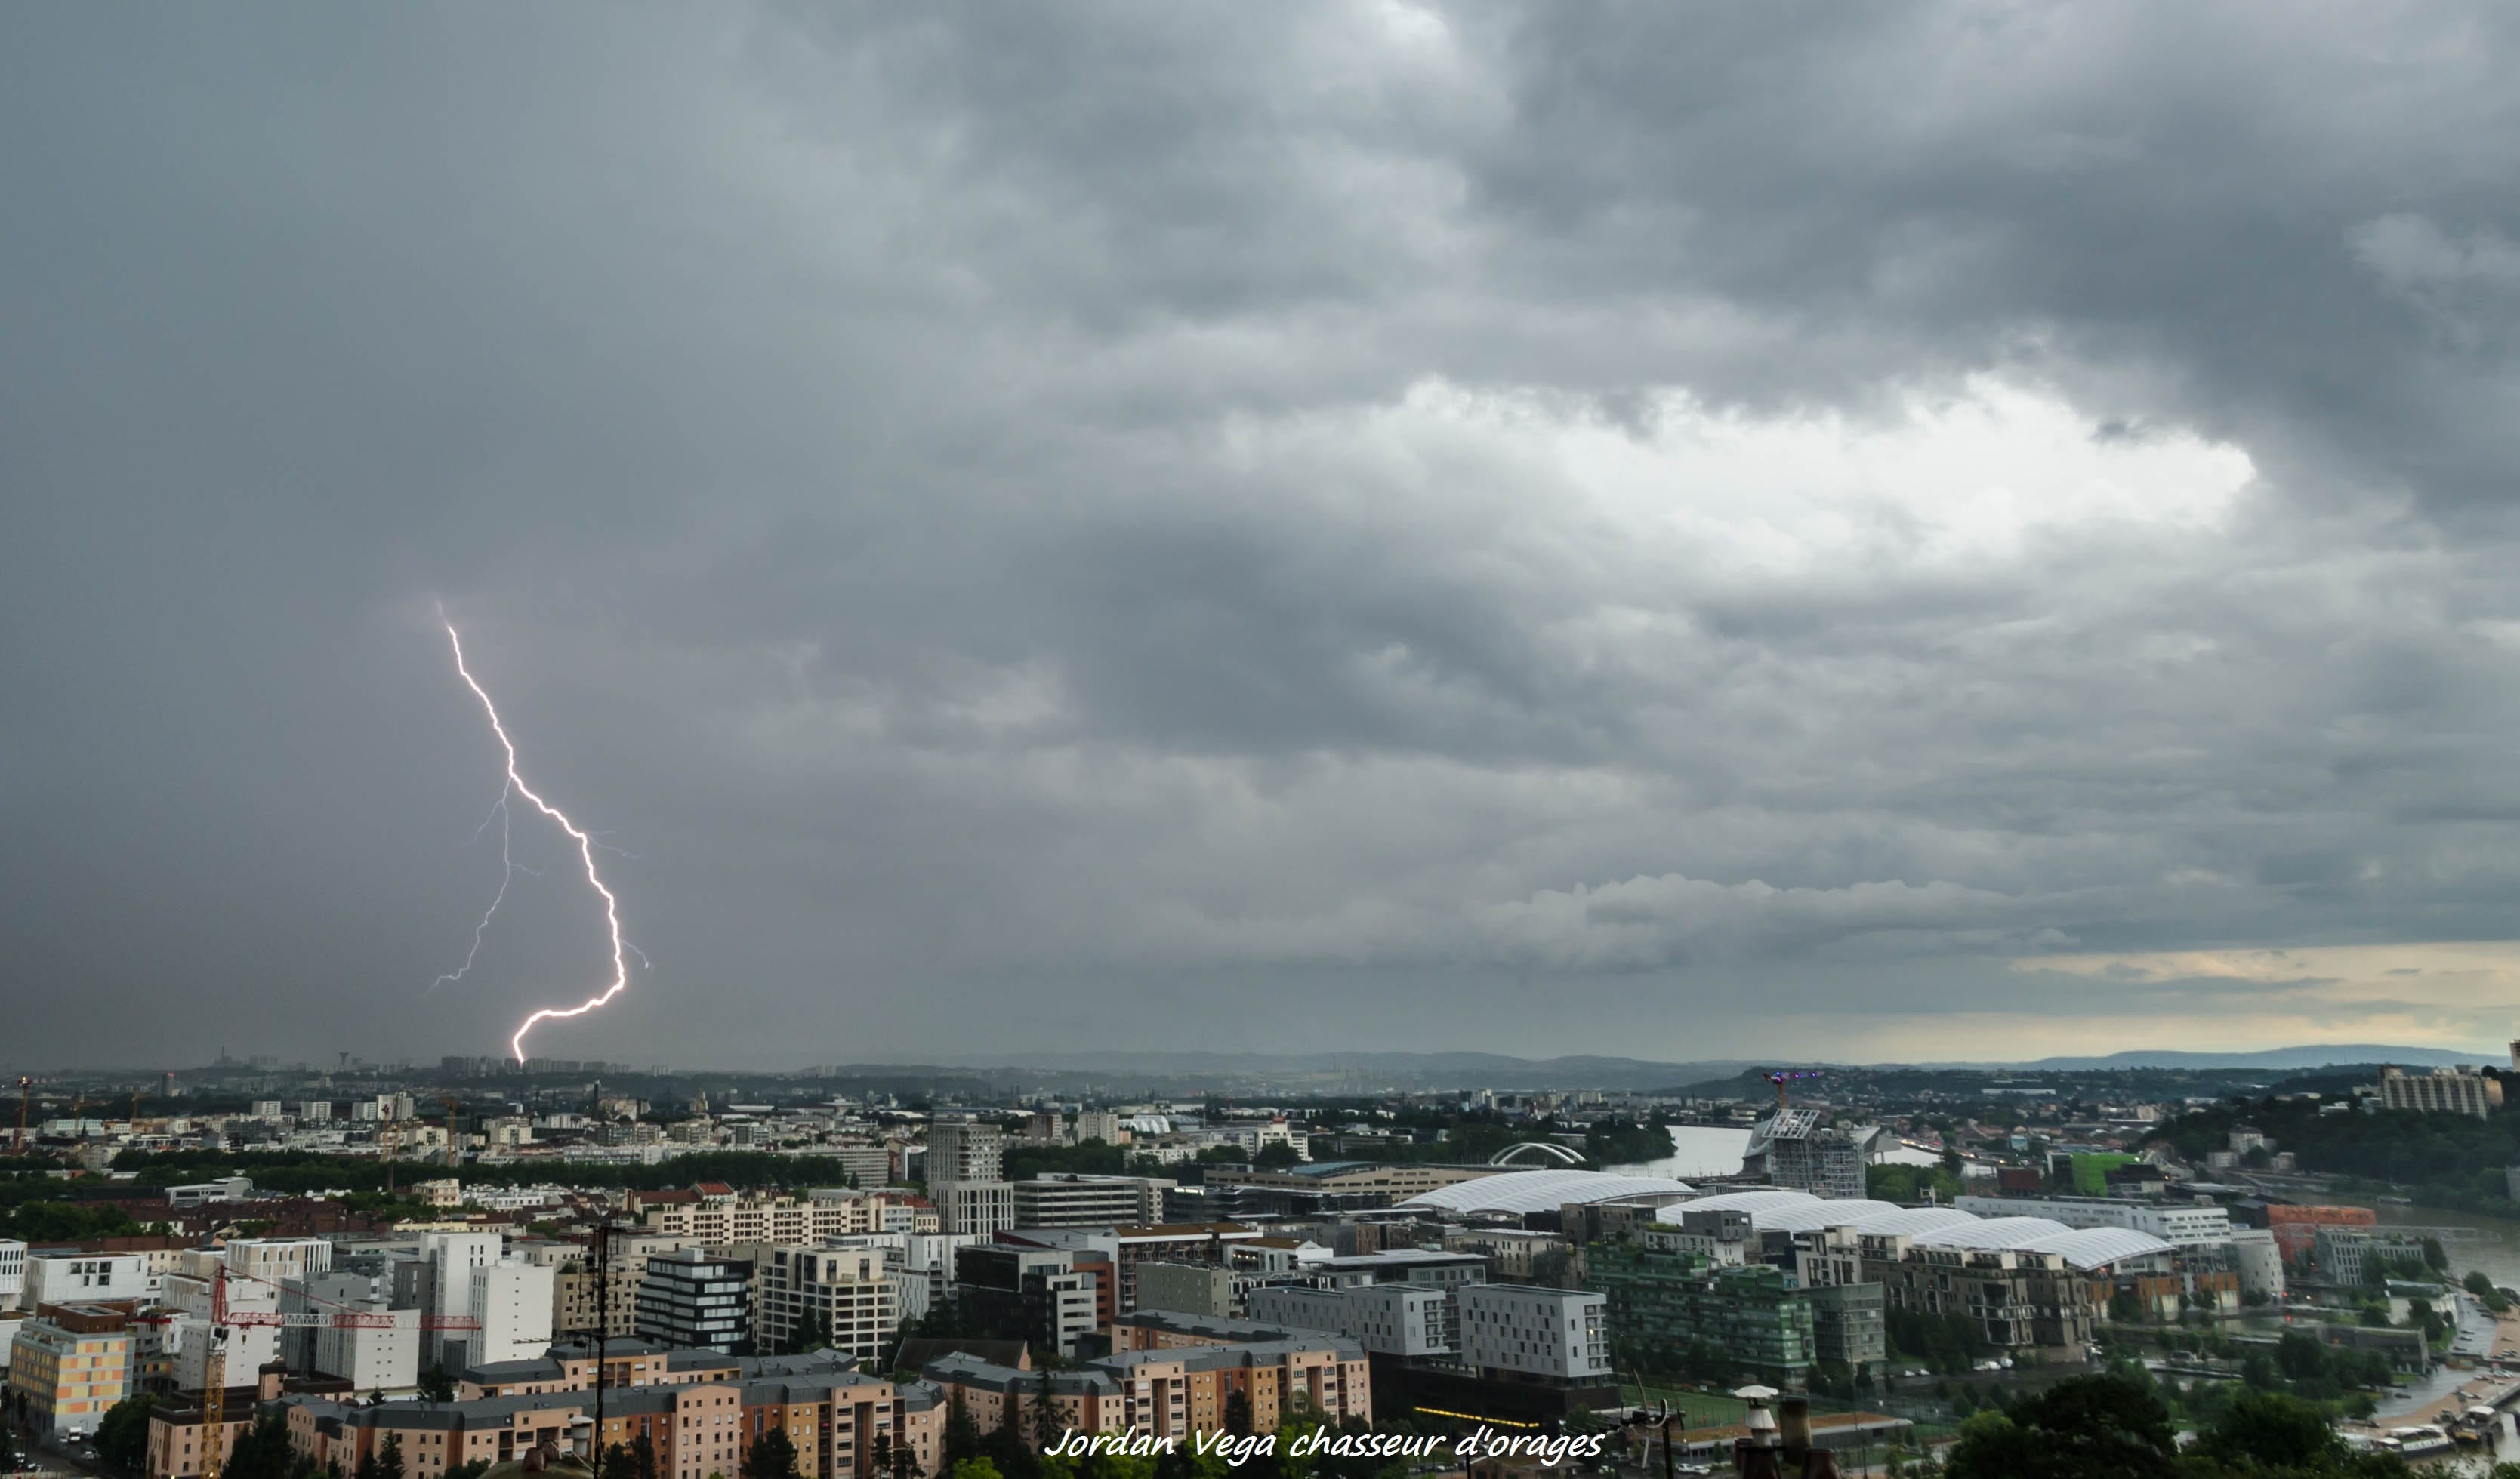 Orage hier à l'est de Lyon , intensité pluvieuse importante et activité électrique souvent noyée - 12/06/2018 19:30 - Jordan VEGA